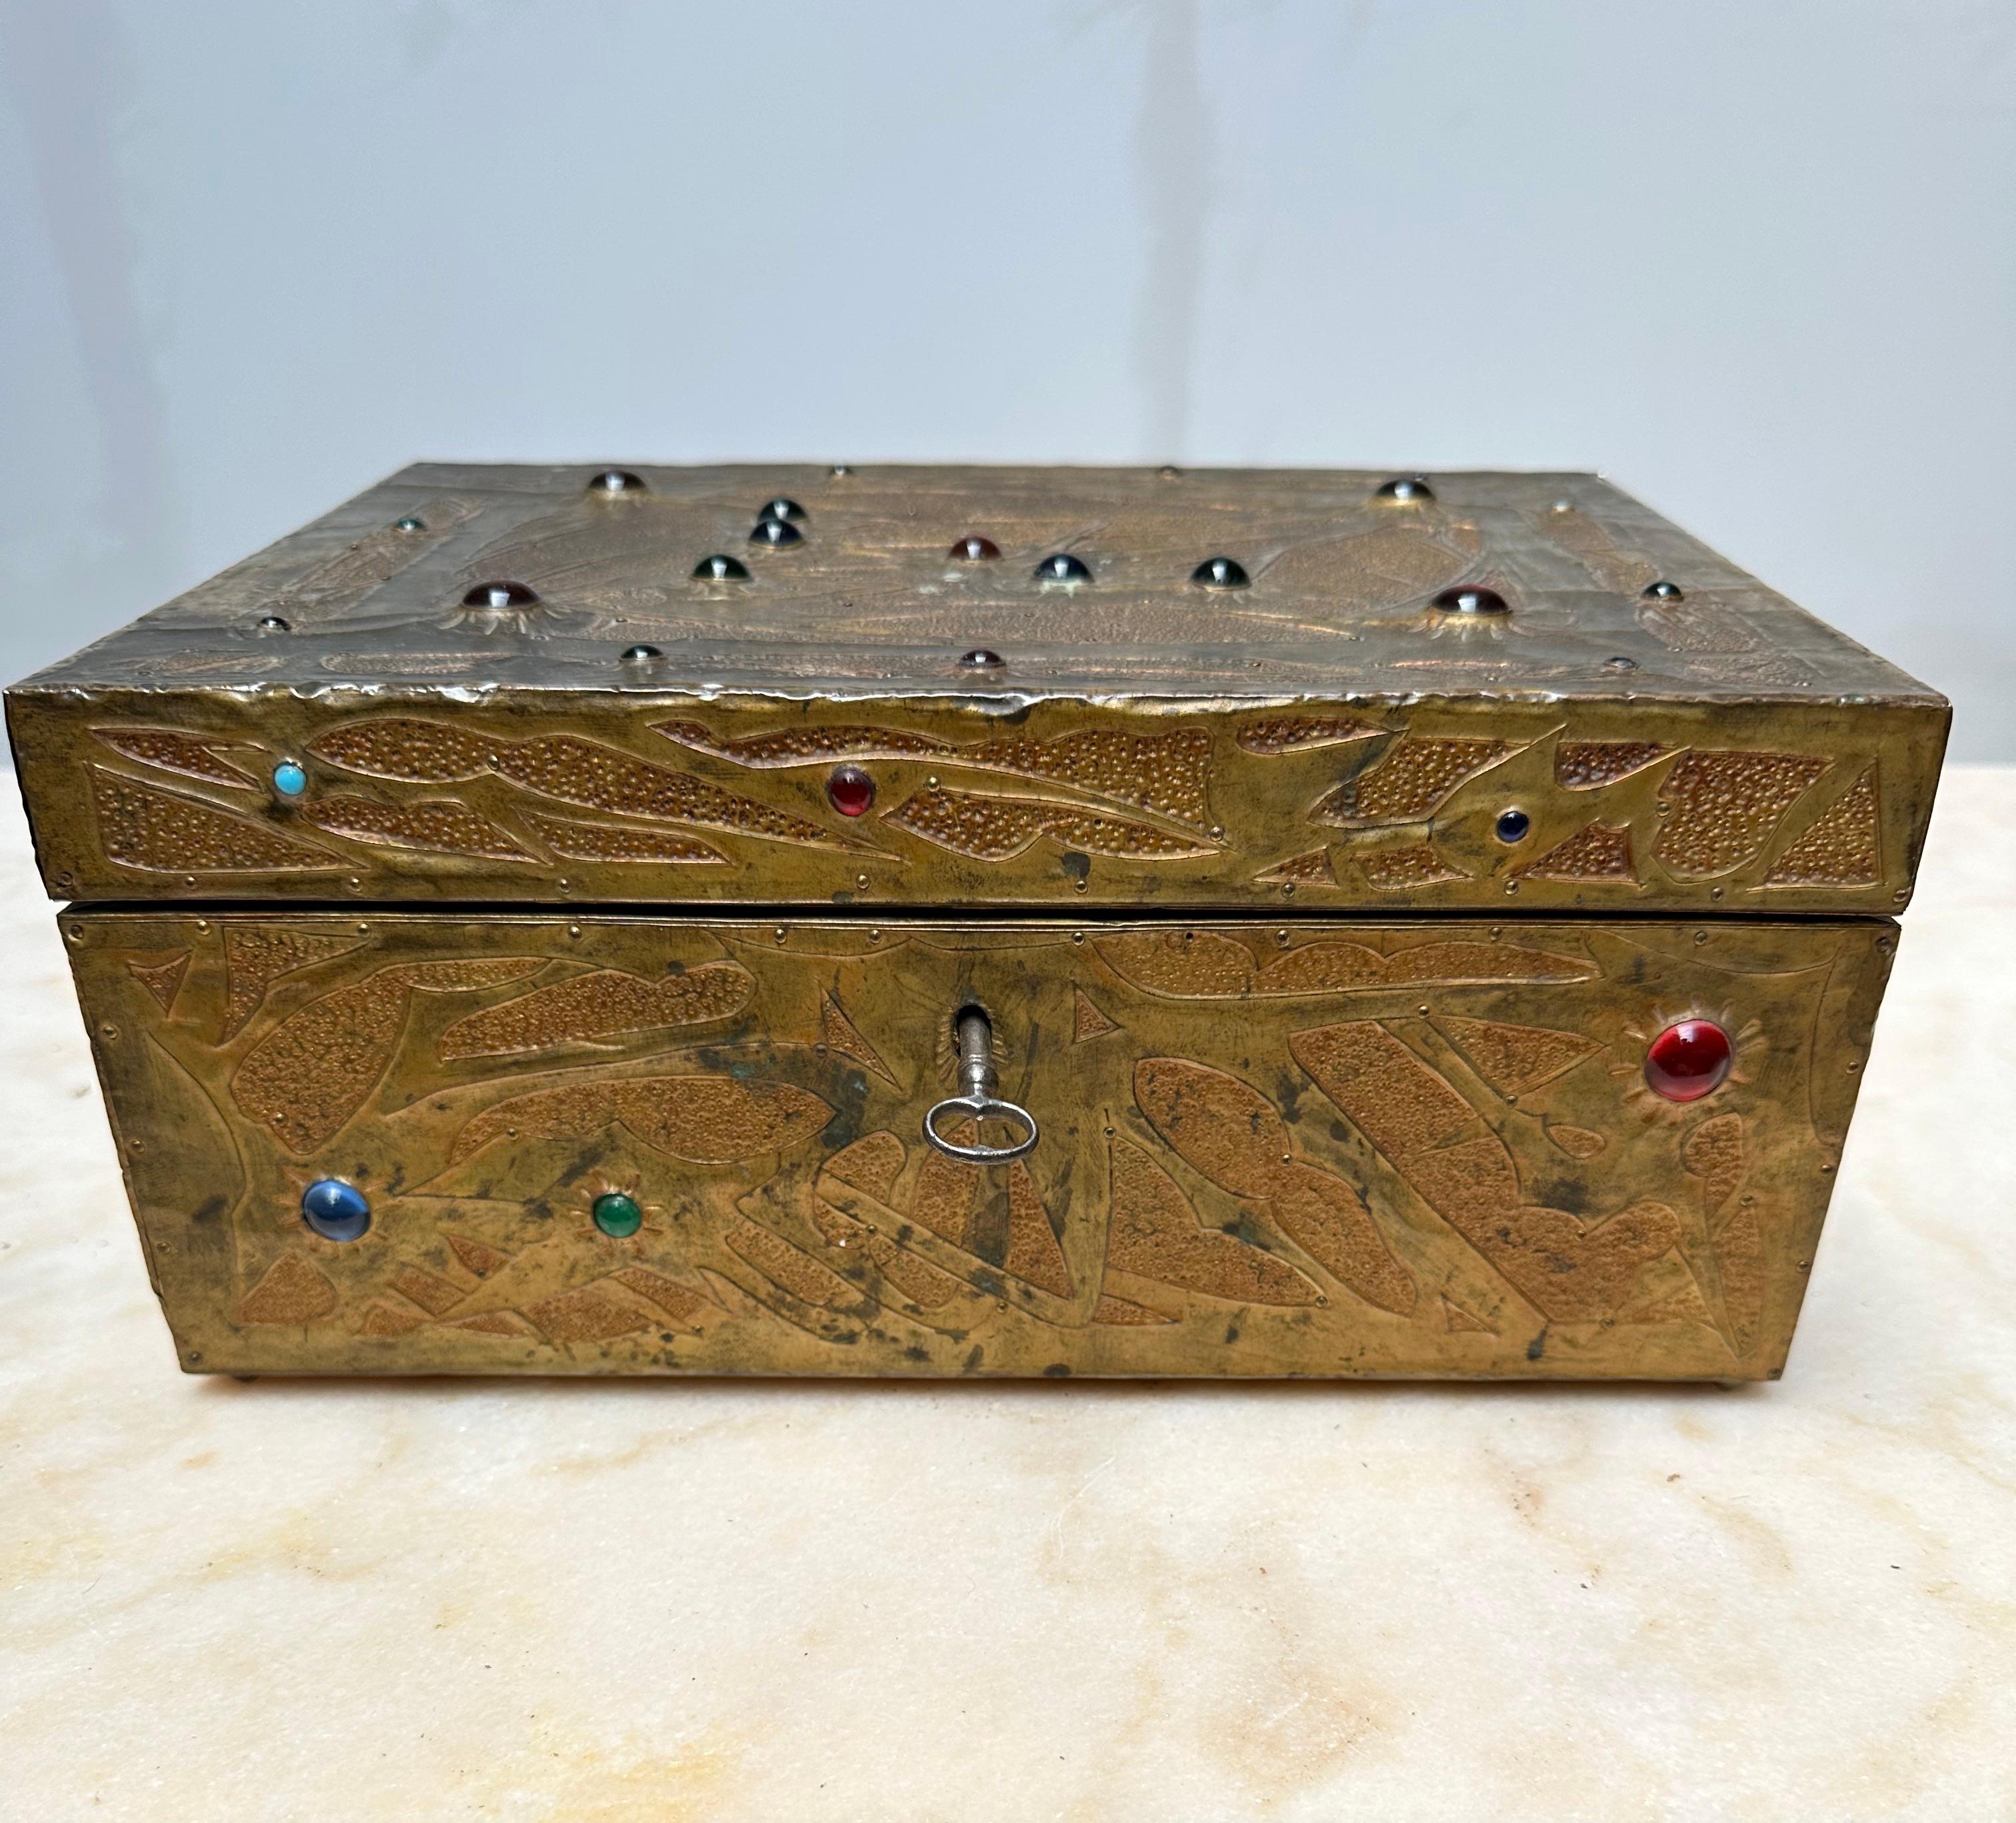 Einzigartige, handgefertigte, antike Schachtel von Alfred Daguet (1875-1942) in guter Größe.

Alfred Daguet war ein französischer Kunsthandwerker/Metallschmied, der um die frühen 1900er Jahre tätig war und sich auf repoussierte Kupferpaneele